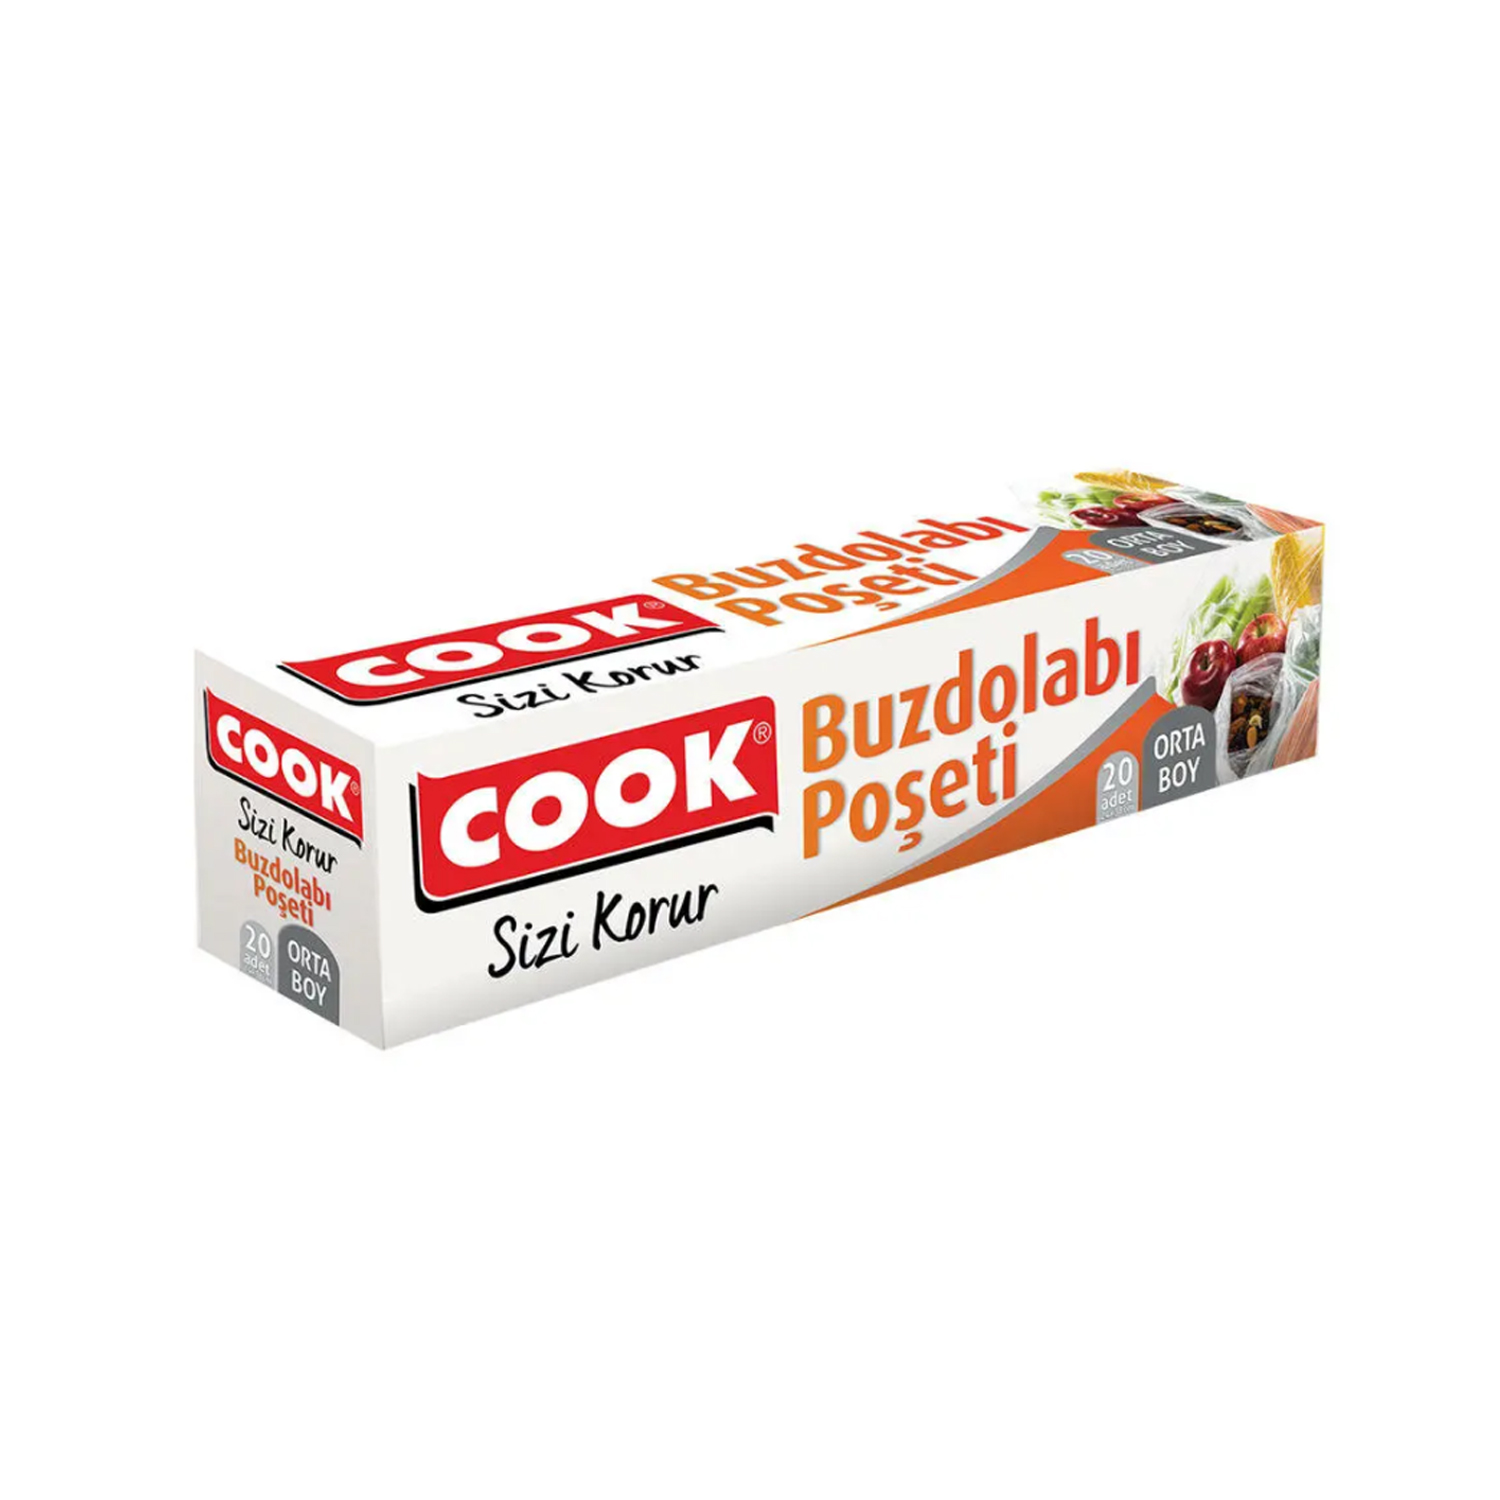 Cook Buzdolabı Poşeti Orta Boy 24 x 38 cm 20'li Paket